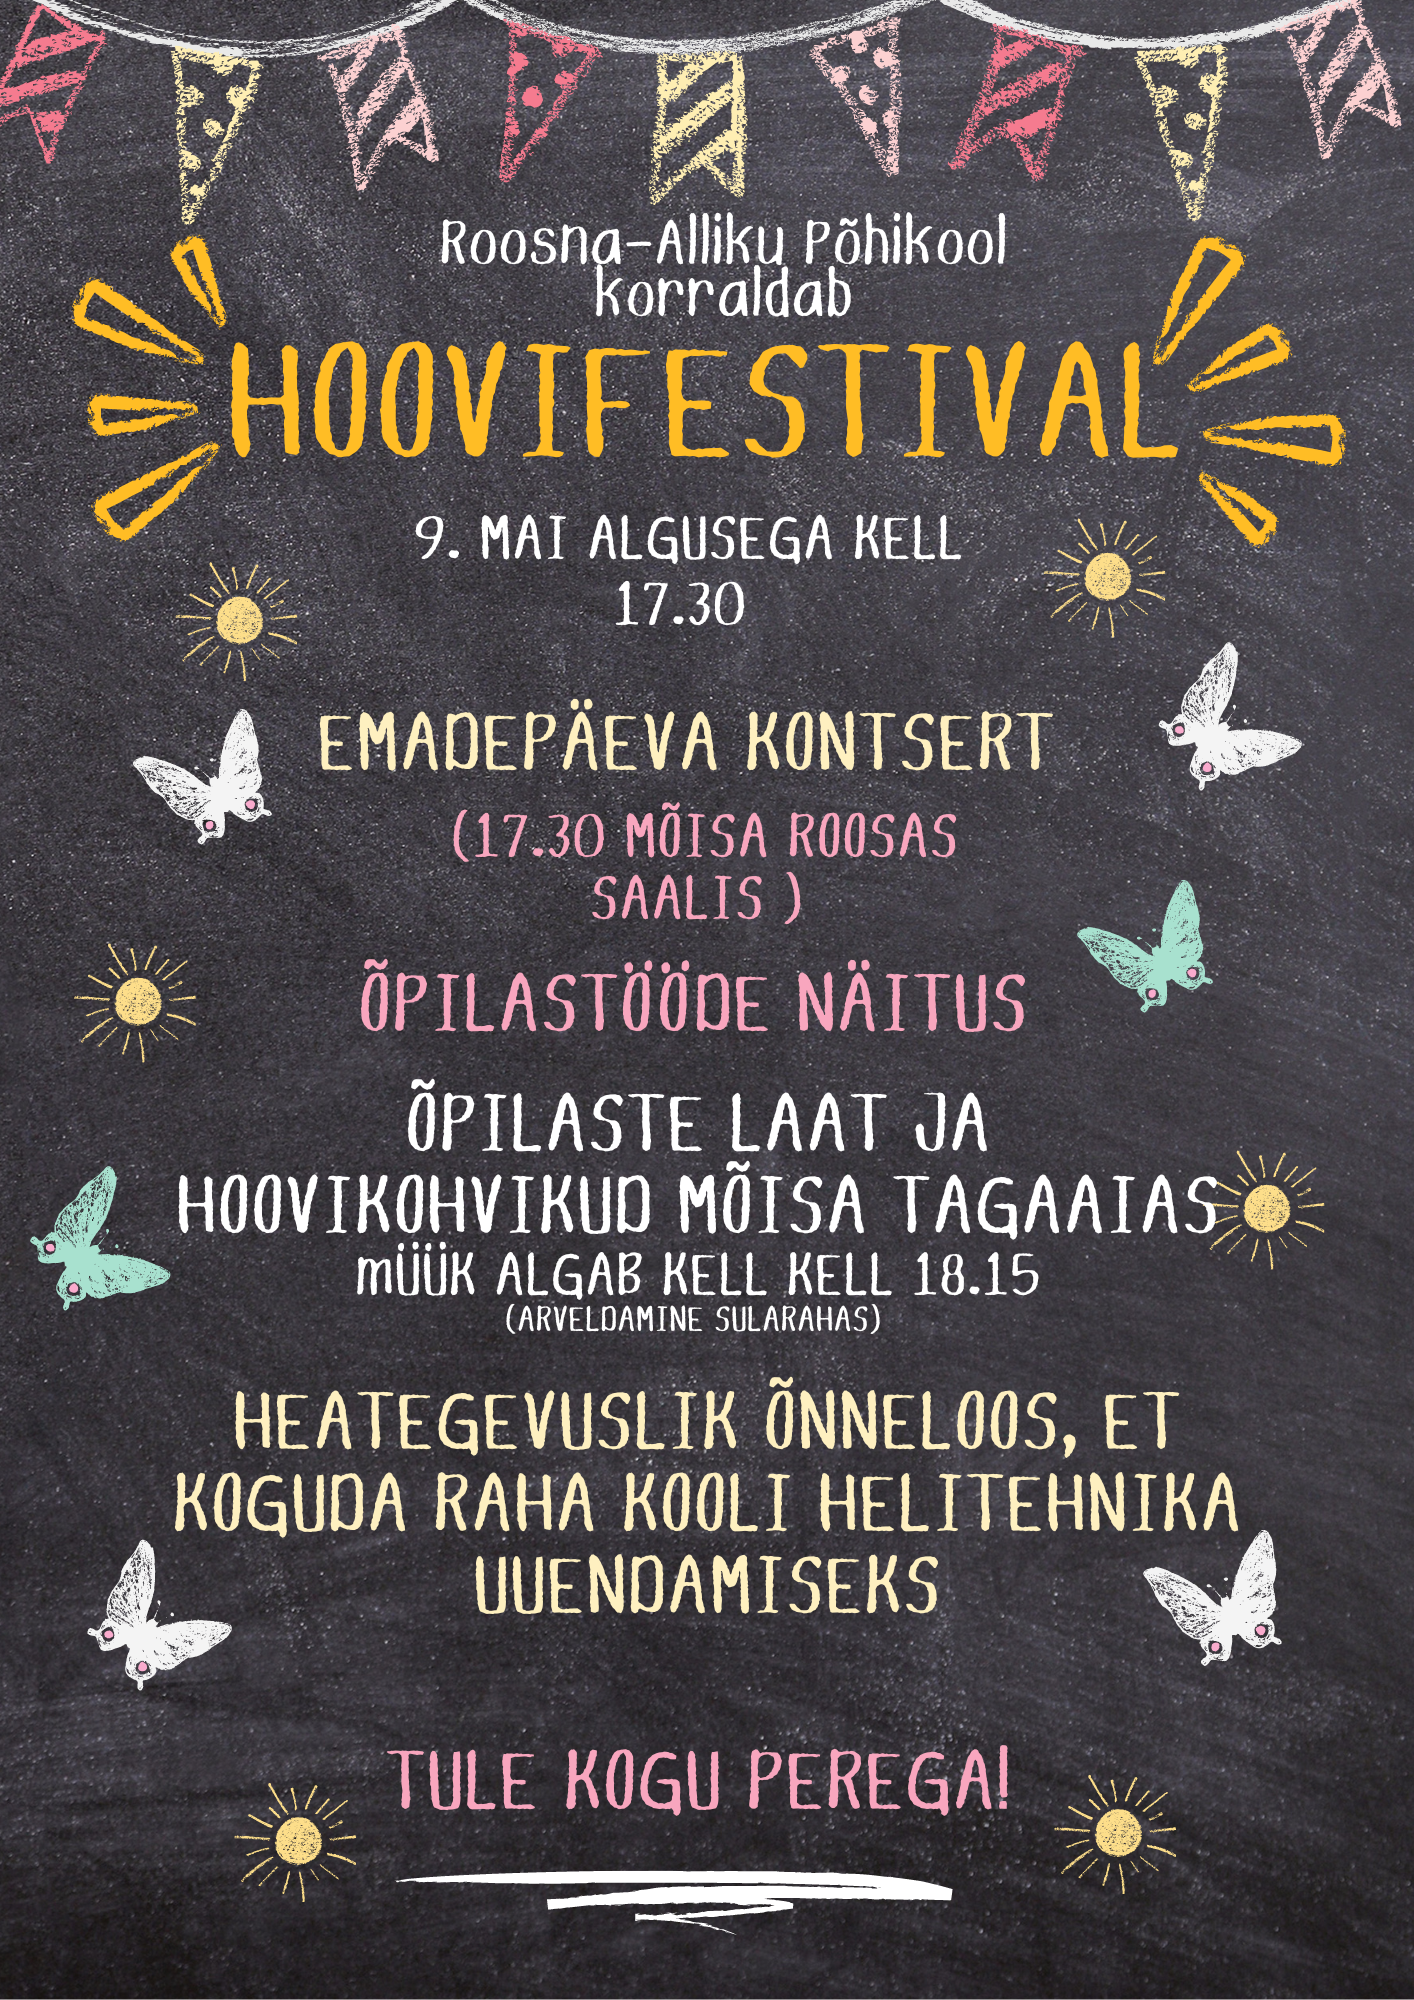 9. mail toimub Roosna-Alliku Põhikooli Hoovifestival. Hoovifestival algab kell 17.30 emadepäeva kontserdiga mõisa roosa saalis. Peale kontserdi ootavad meie koo